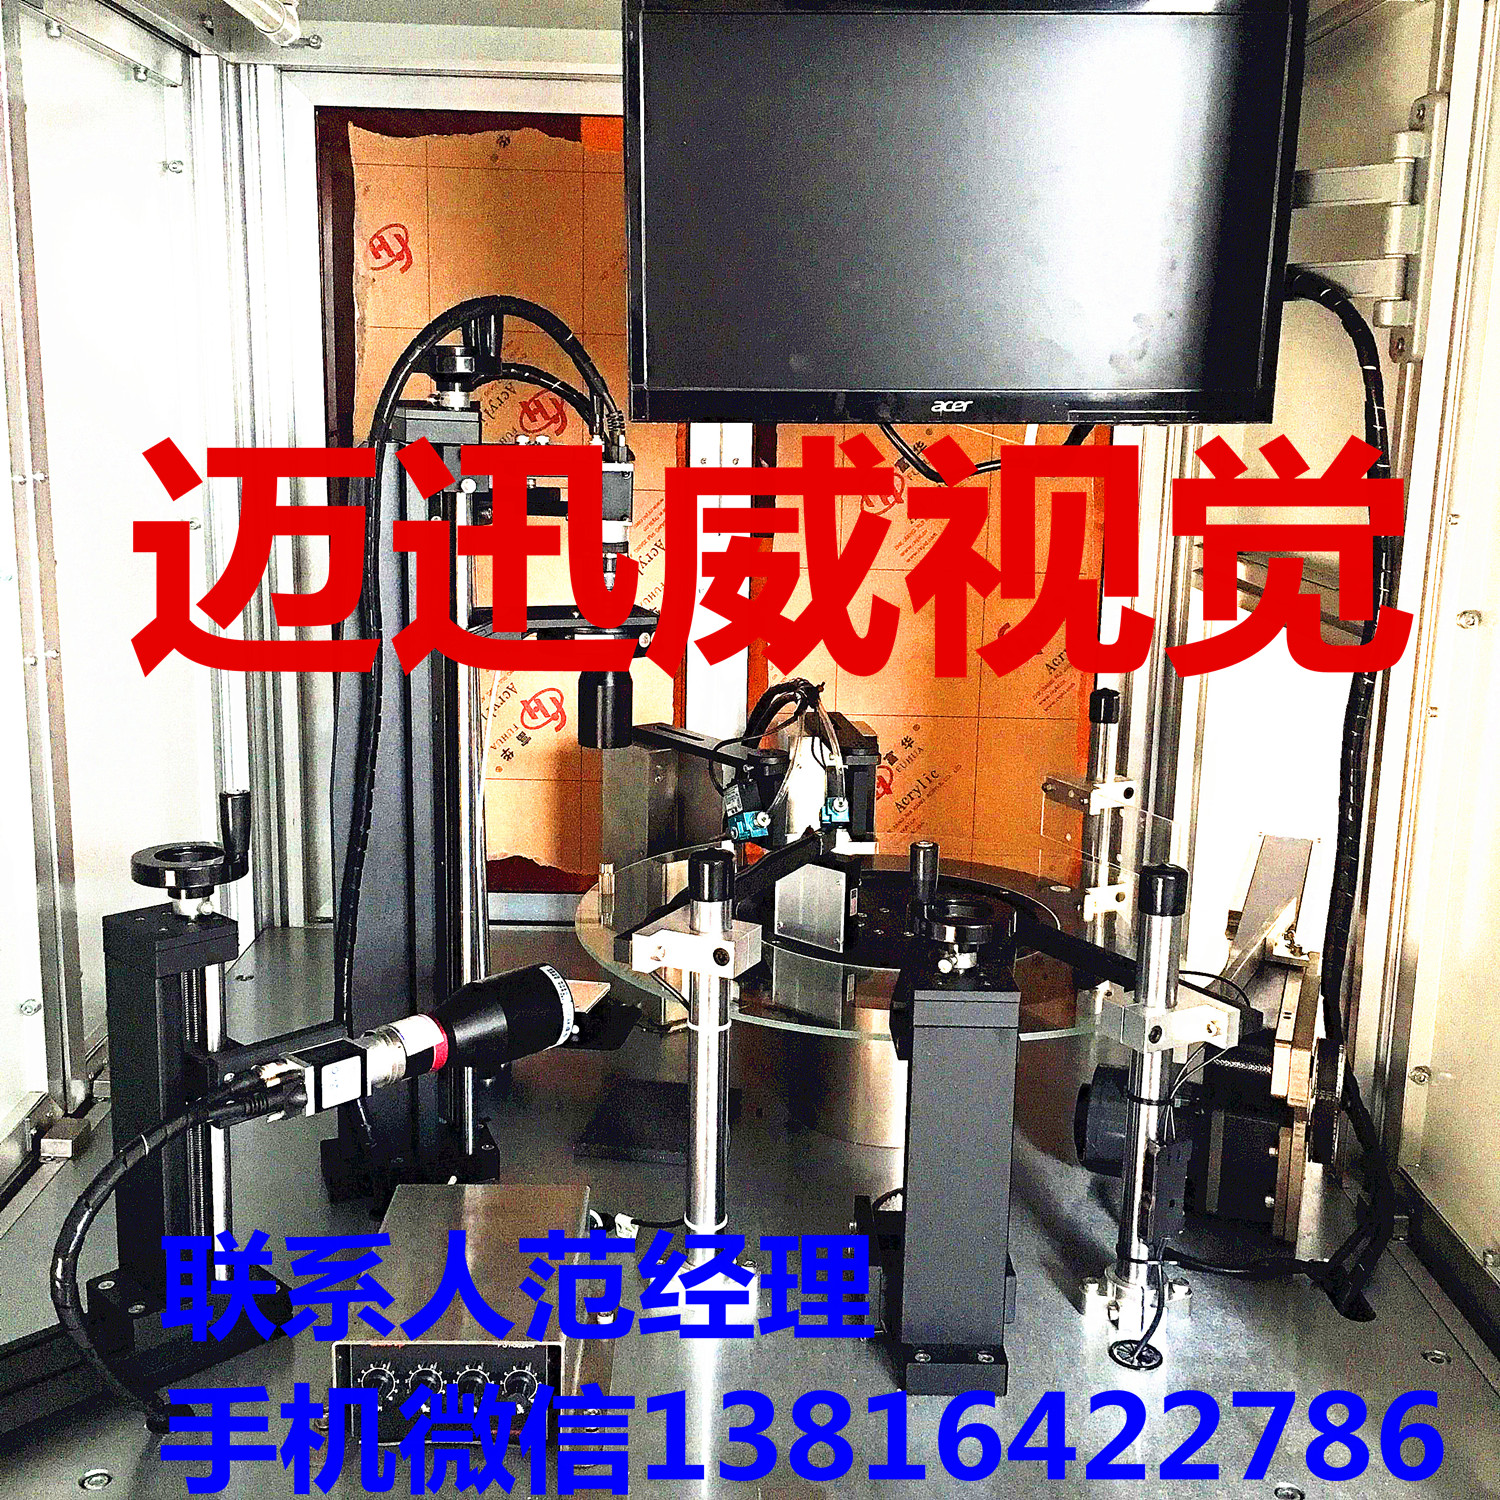 上海   迈迅威  粉末冶金产品筛选机  光学筛选机  全检机